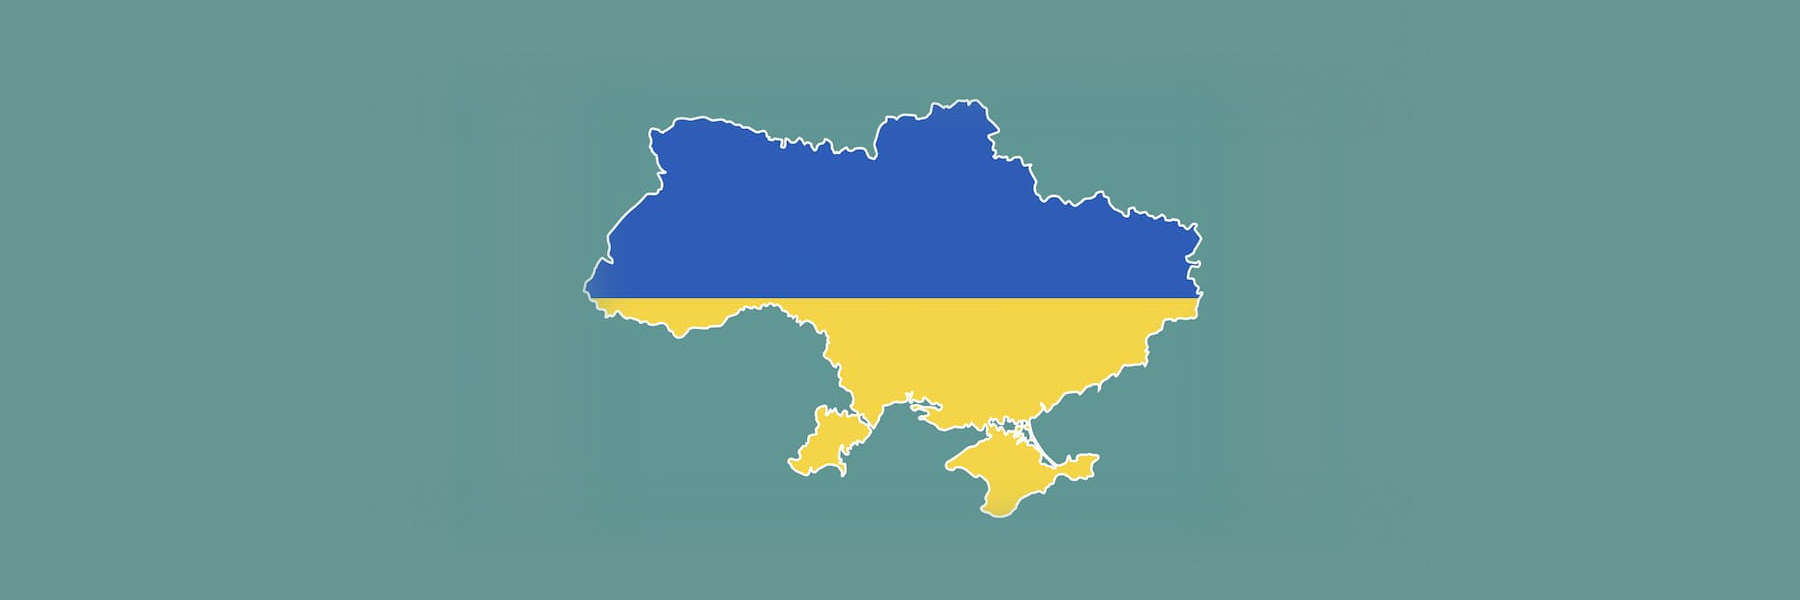 Ukraina: Arla lahjoittaa ruoka-apua ja miljoona euroa sekä keskeyttää toimintansa Venäjällä